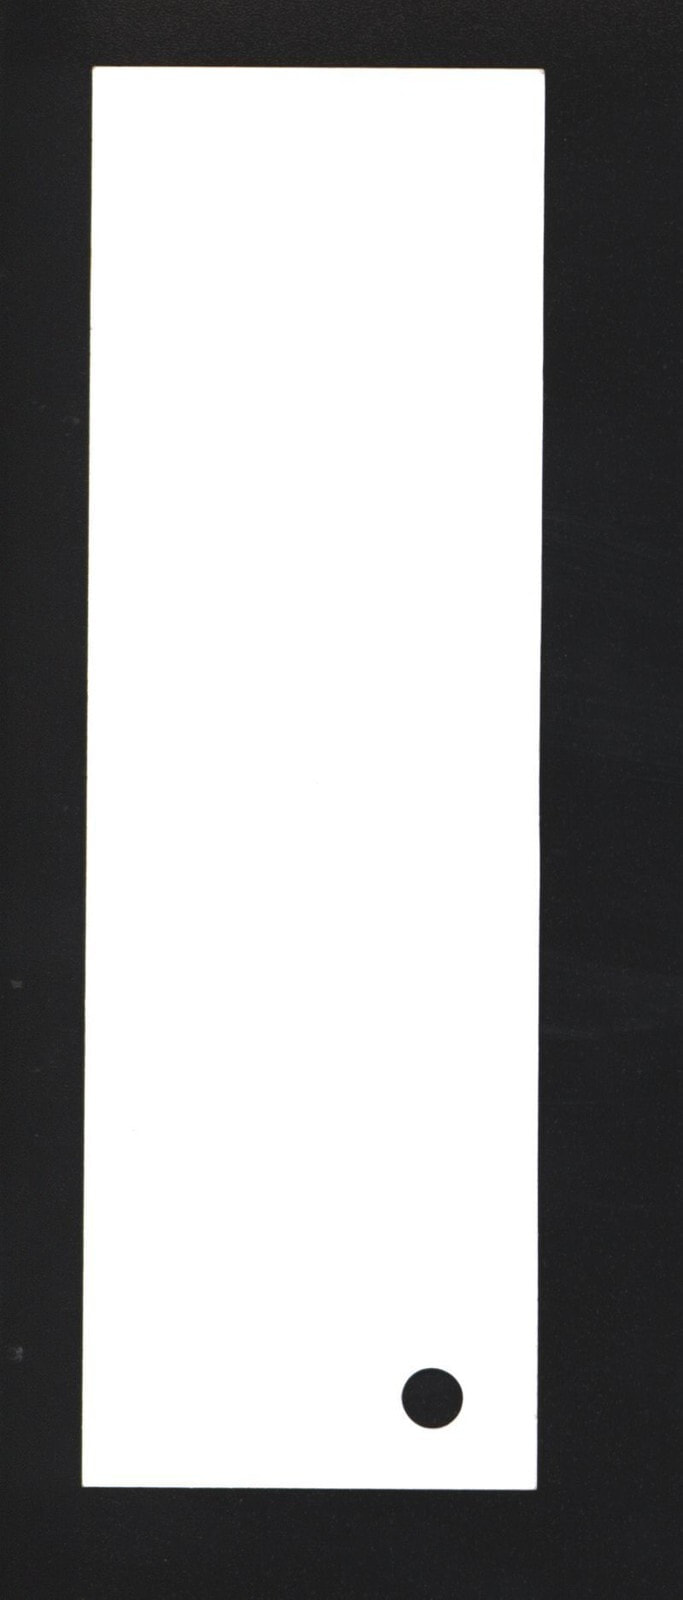 Цветная бумага или картон для уроков труда Kreska Brystol A1 250g biały 20 arkuszy